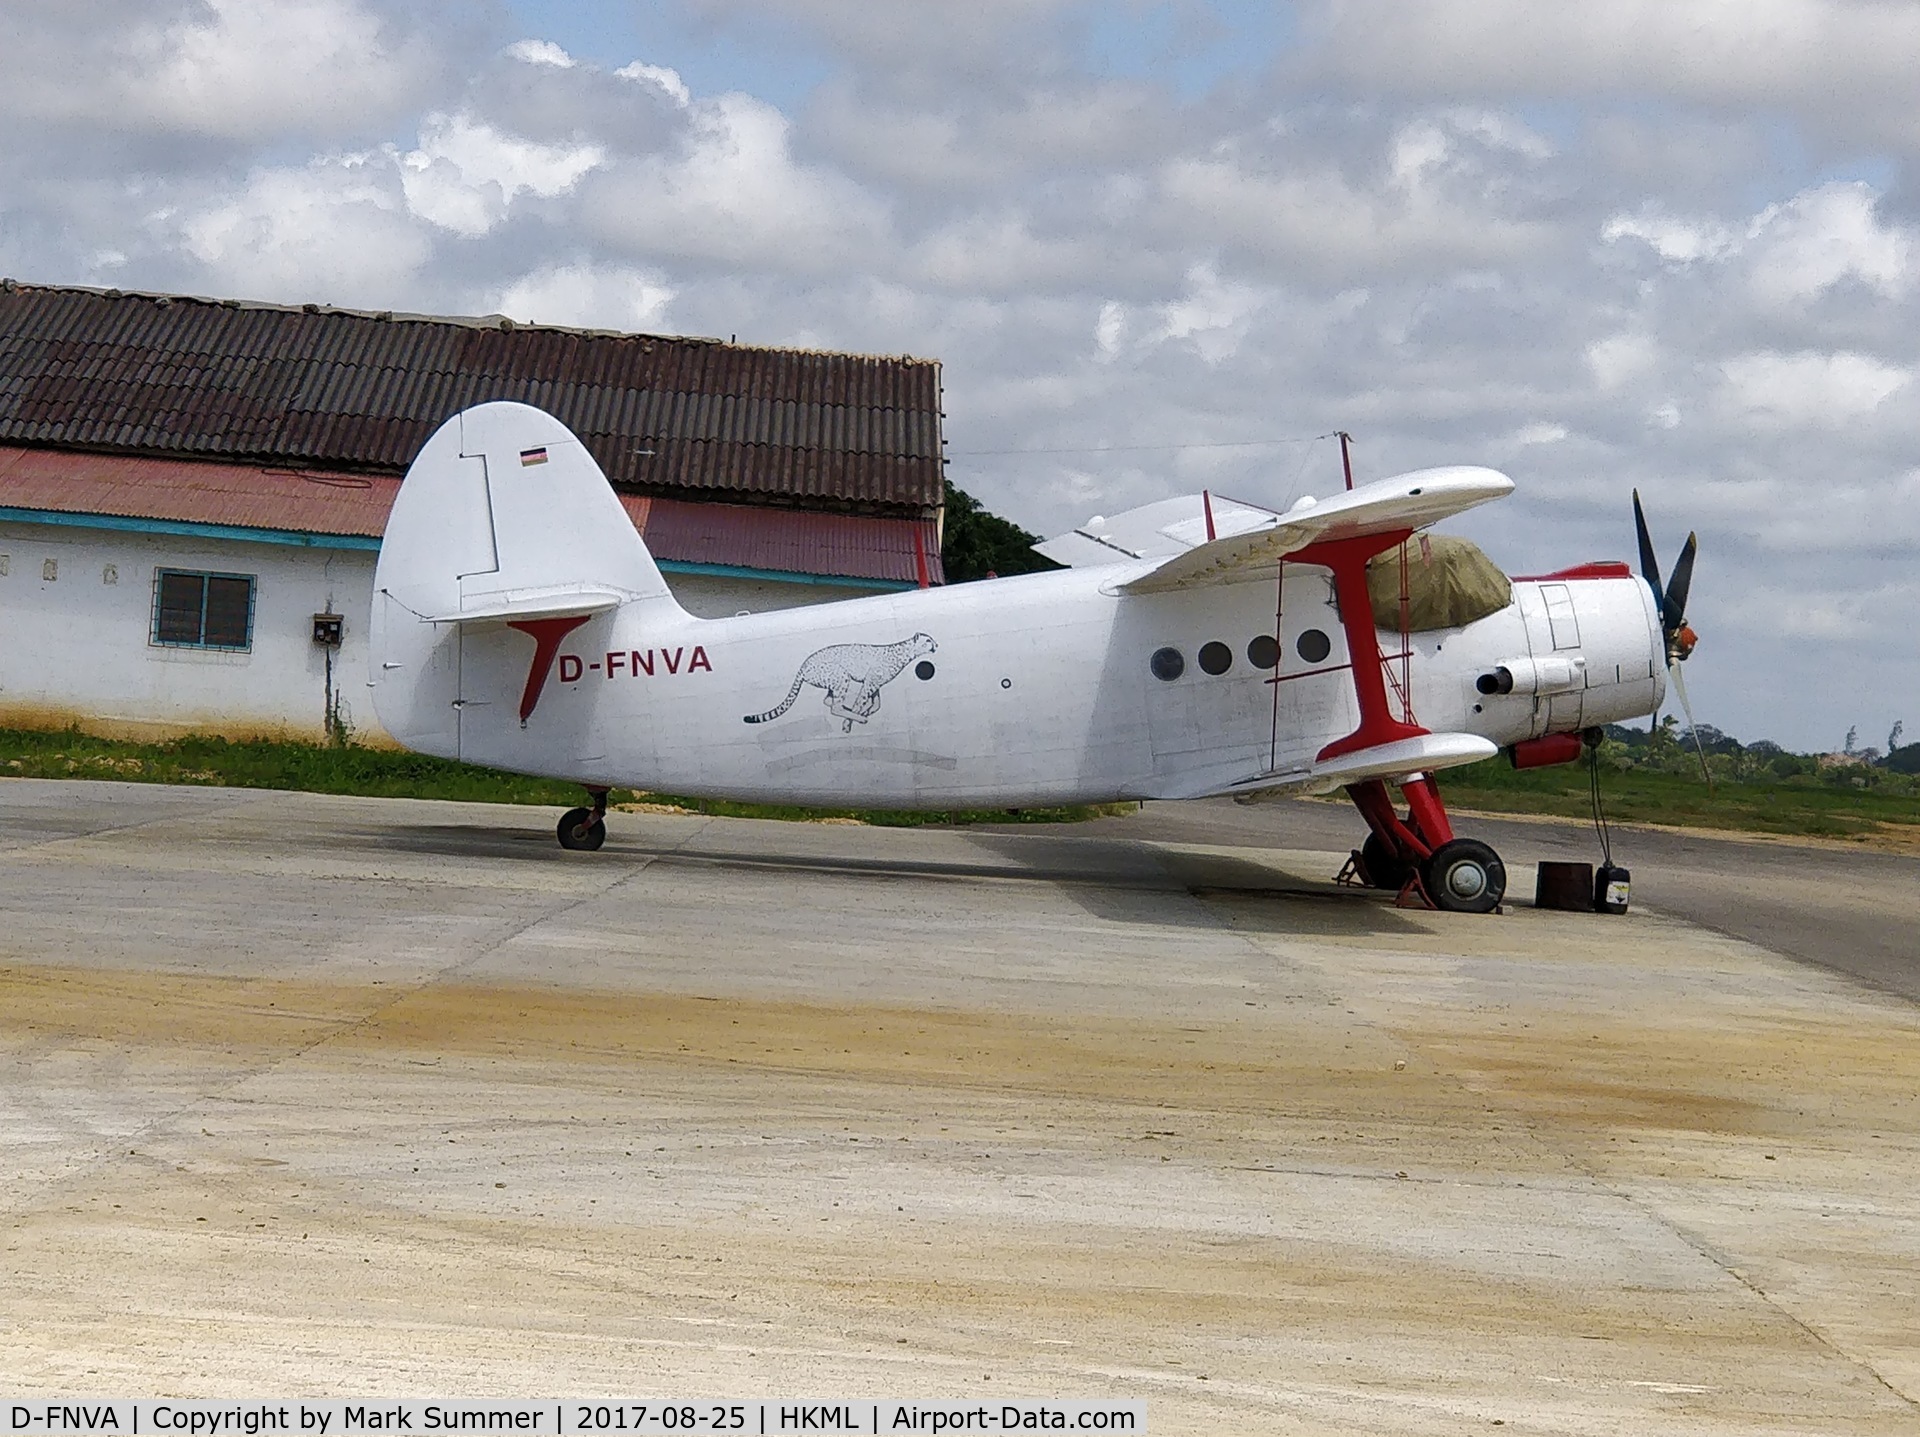 D-FNVA, Antonov An-2 C/N 19347320, Seen at Malindi airport in Kenya